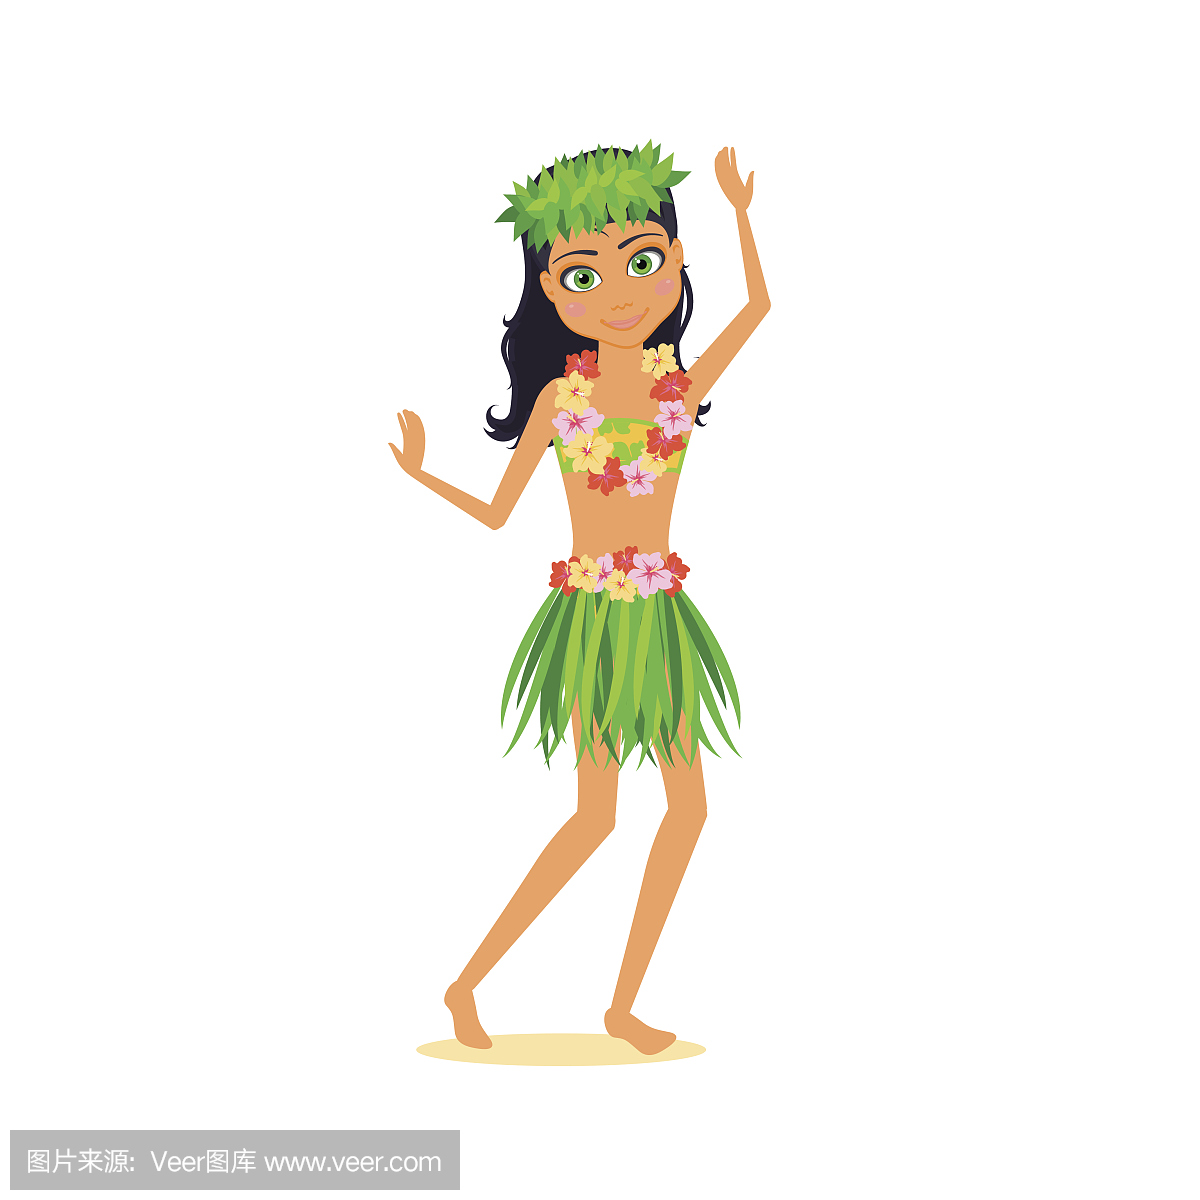 图旅行。夏威夷的女人,花环,国家裙子和树叶花